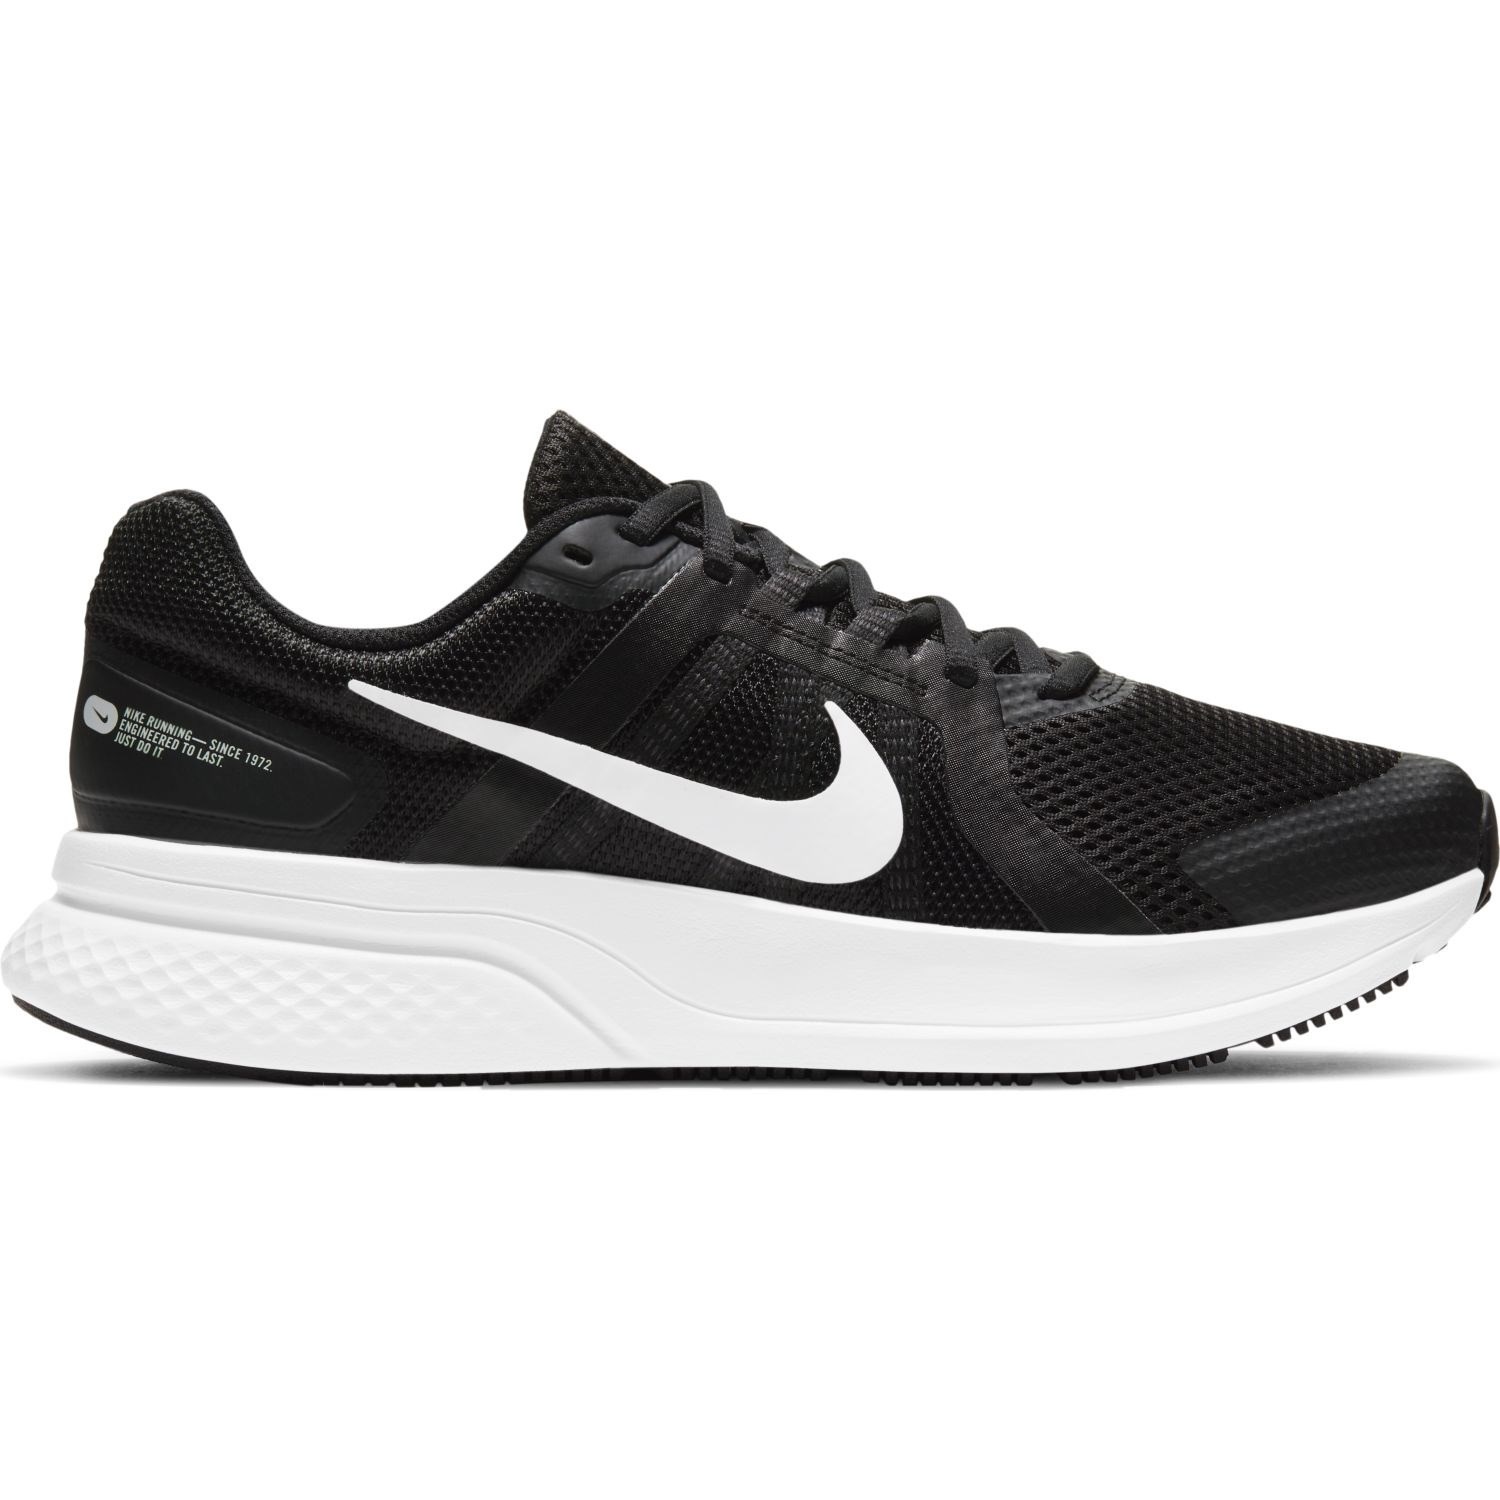 Nike Run Swift 2 - Mens Running Shoes - Black/White/Dark Smoke Grey ...